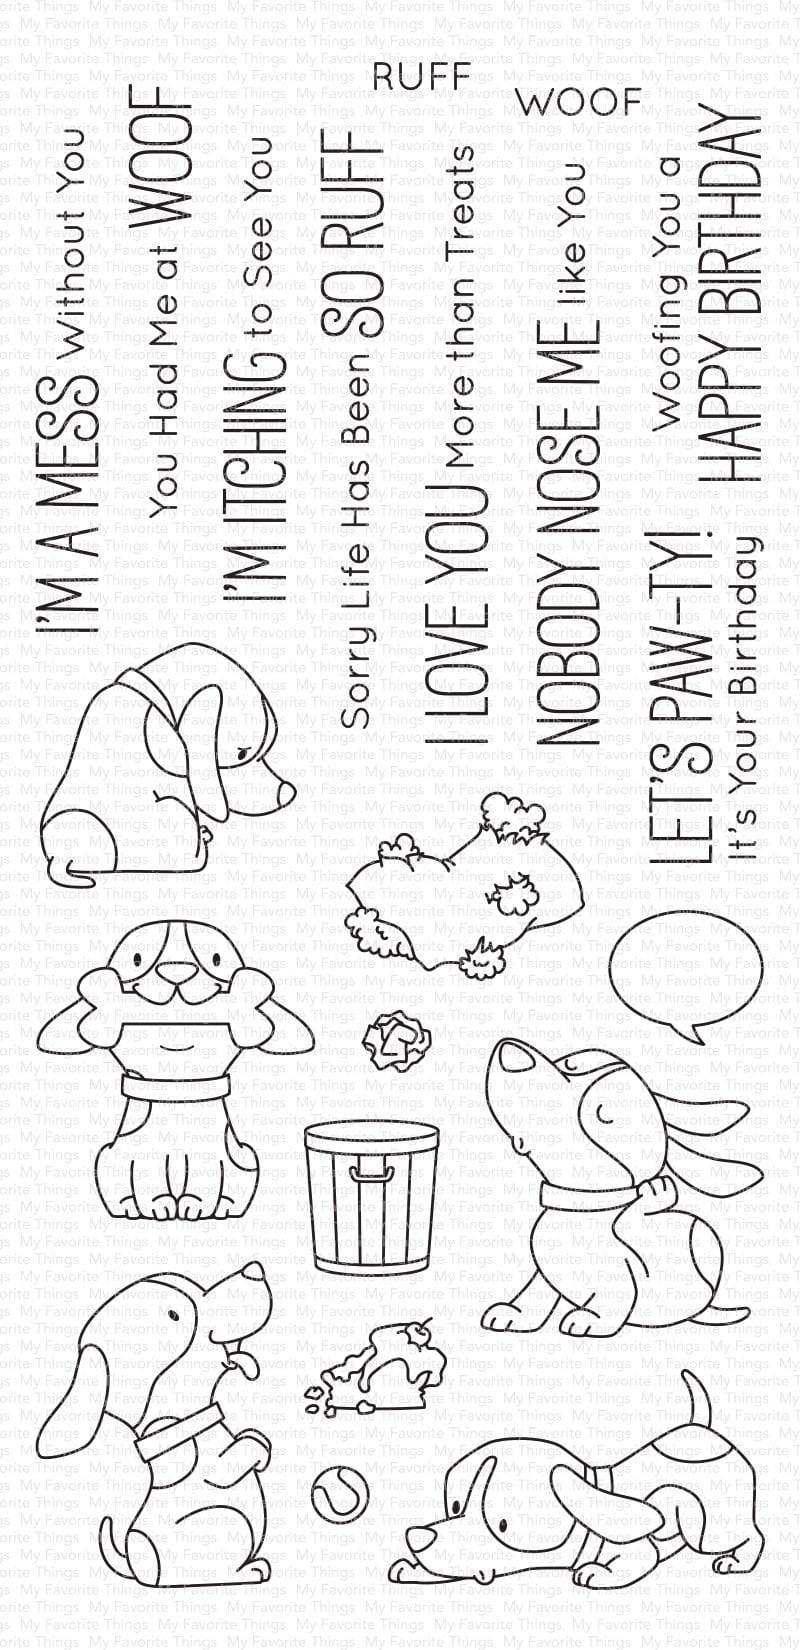 My Favorite Things BB Woof Pack Stamps Set - Crafty Meraki